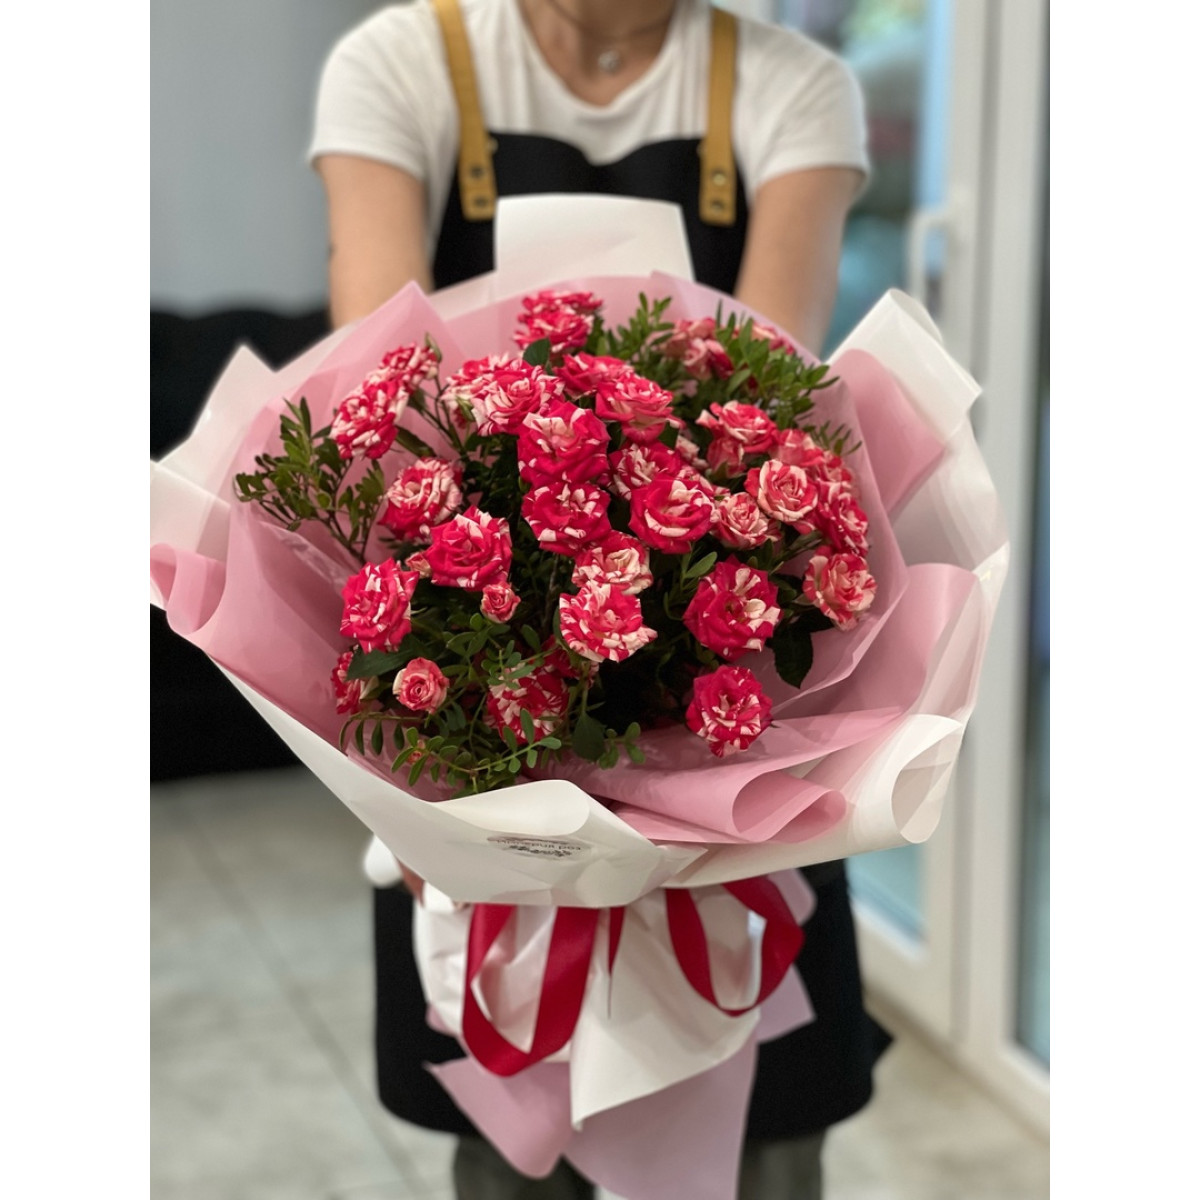 Букет 9 кустовых роз Фаер Фокс с упаковкой